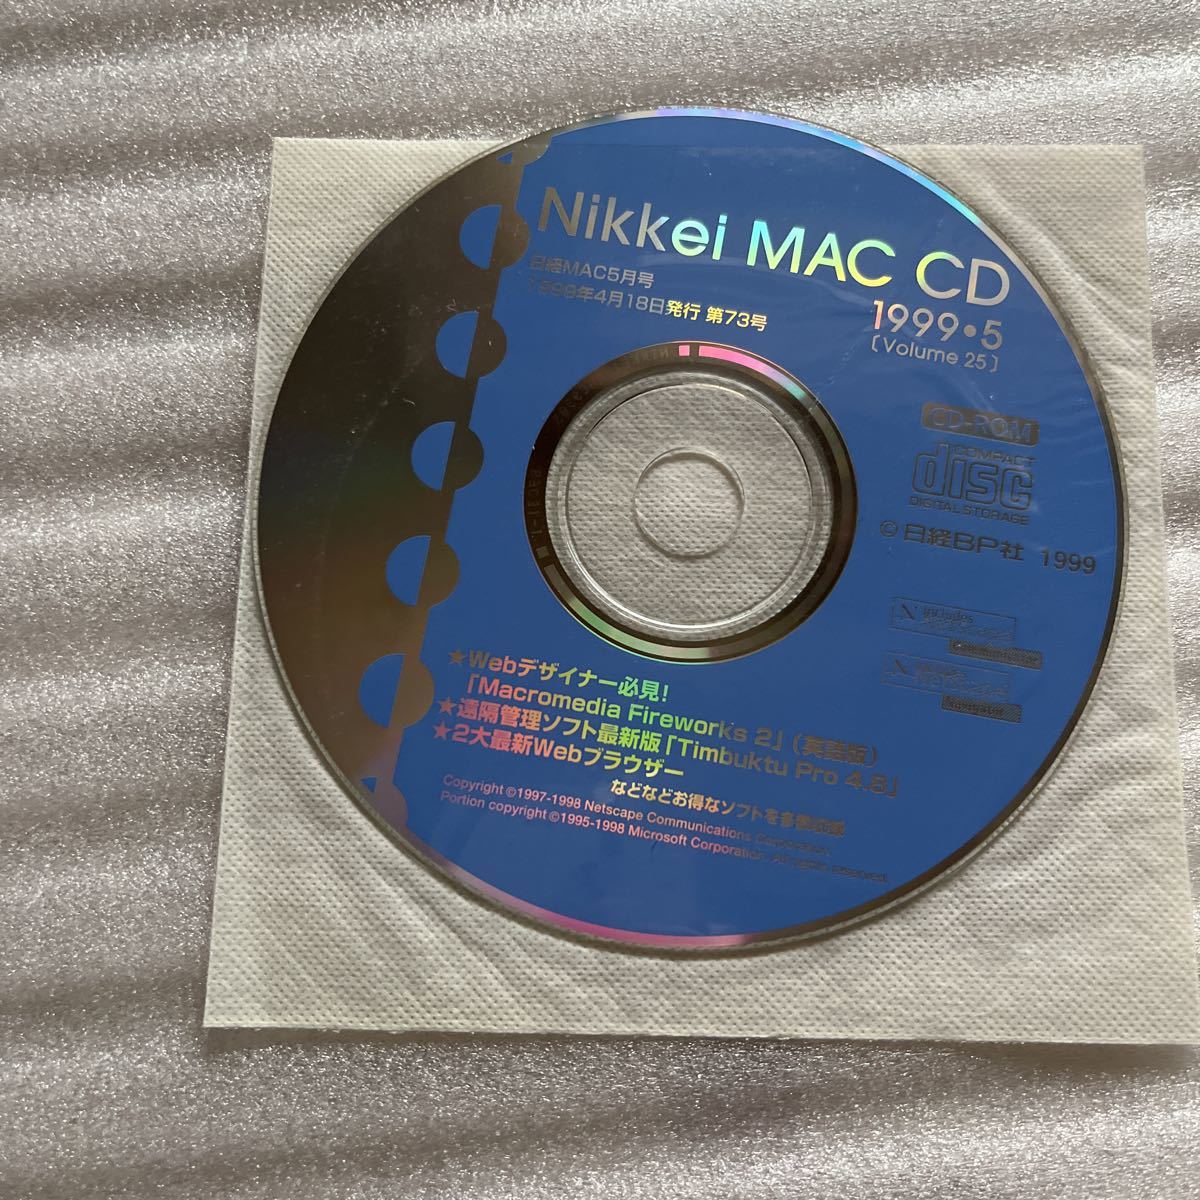  Nikkei MAC 1999 5 дополнительный подарок запись CD ROM имеется специальный выпуск NIKKEI Mac OS X server первый body .USB firewire Nikkei BP фирма книга@ литература компьютер персональный компьютер PC